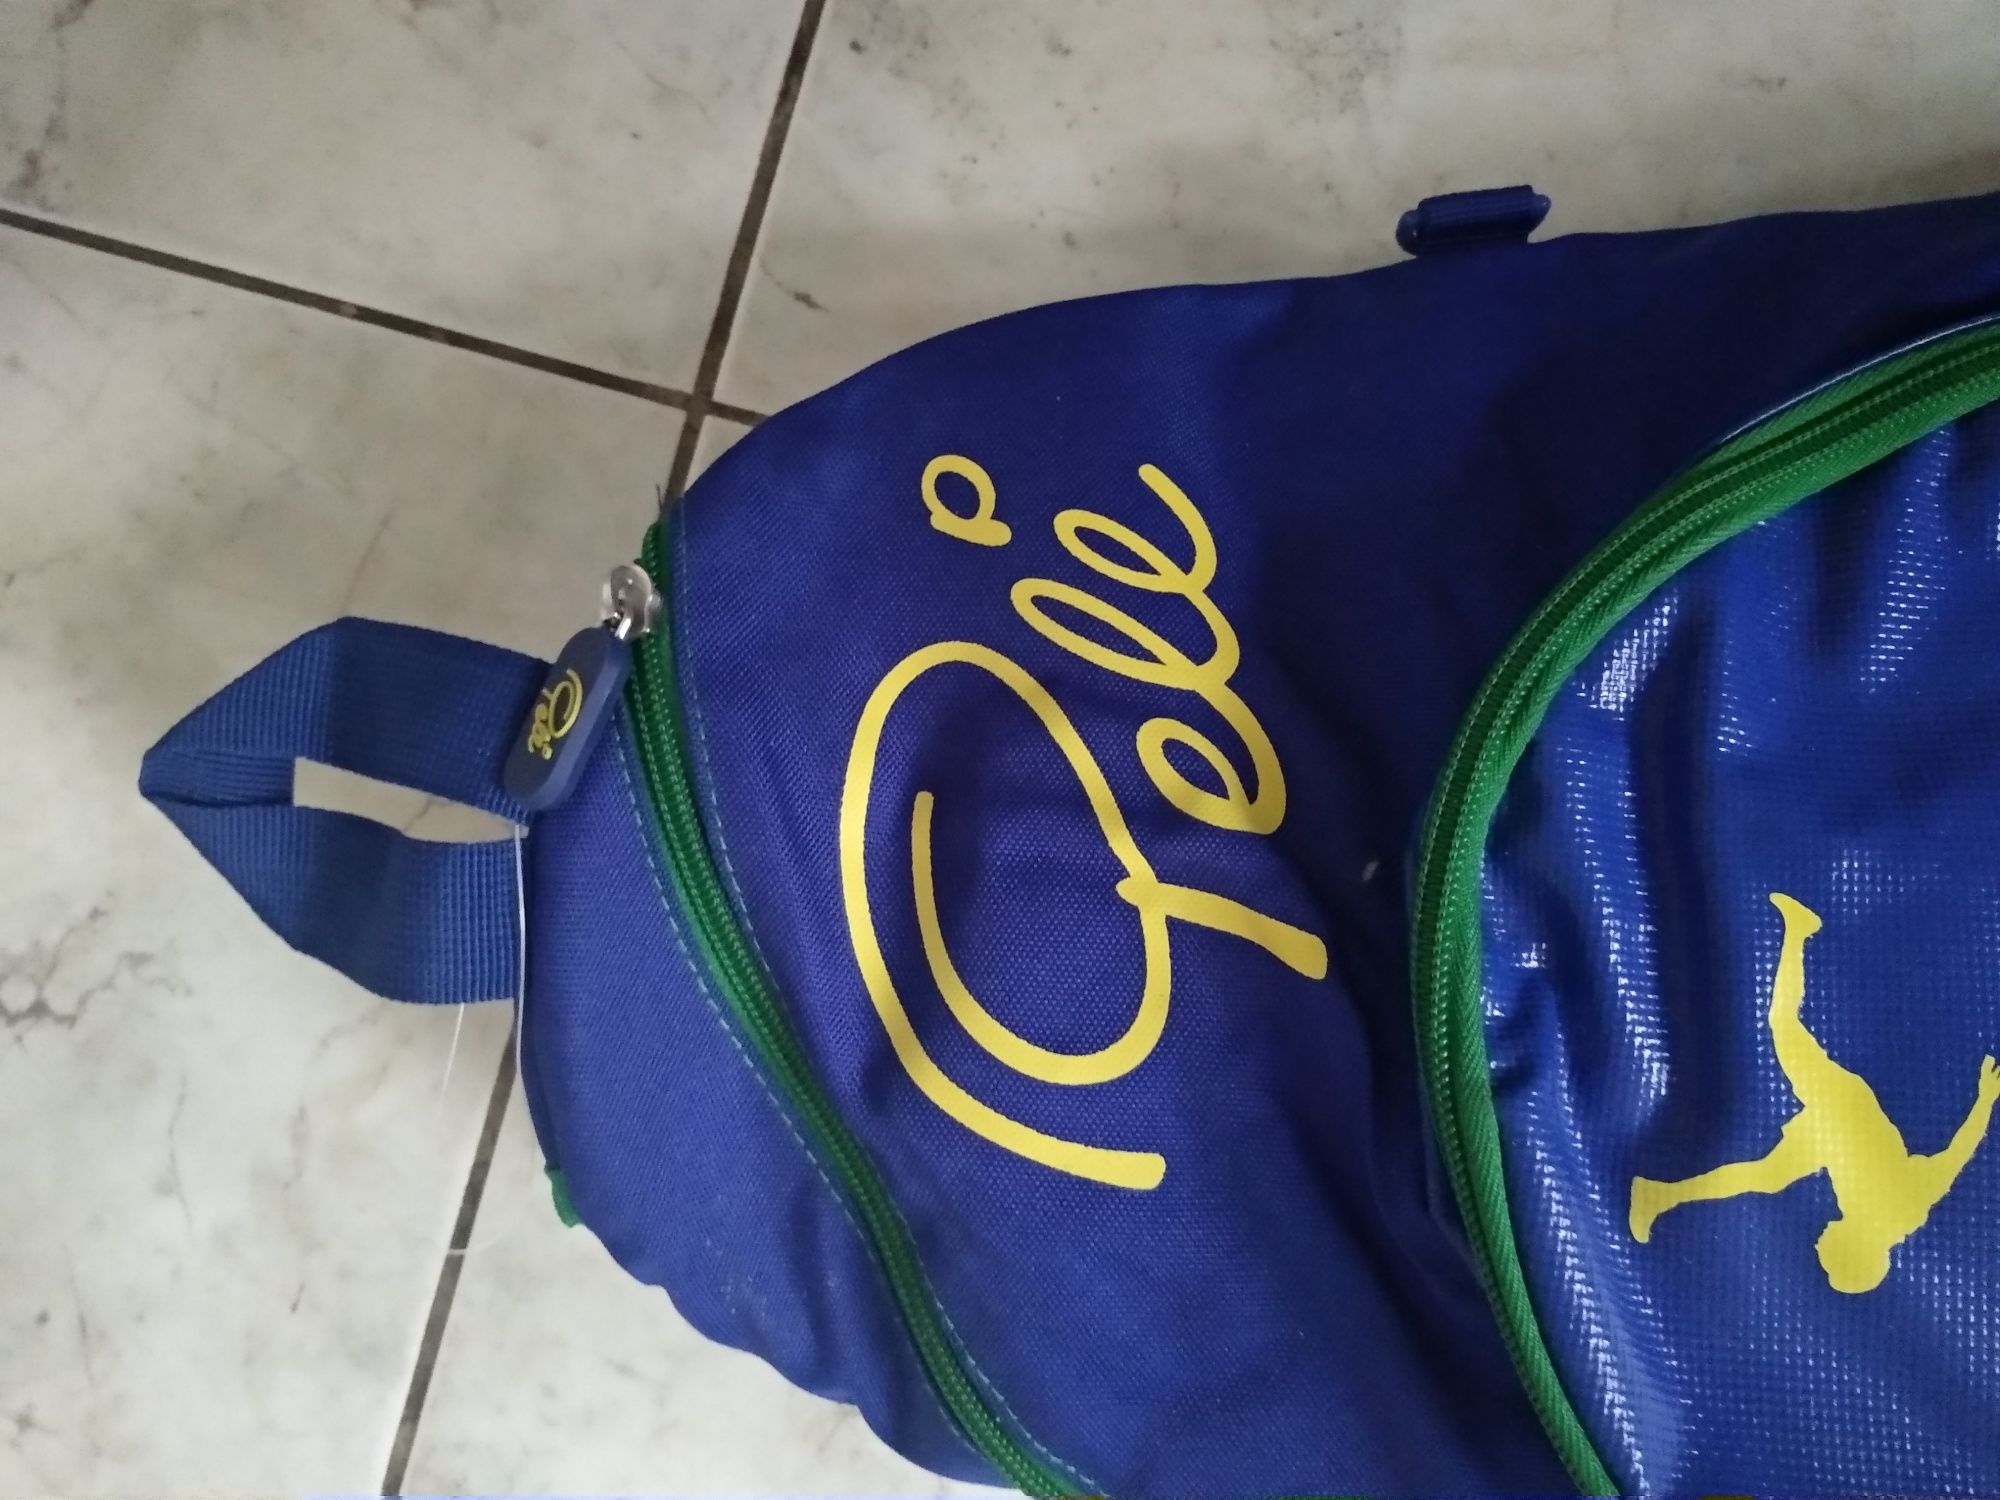 Plecak sportowy firmowy Pele